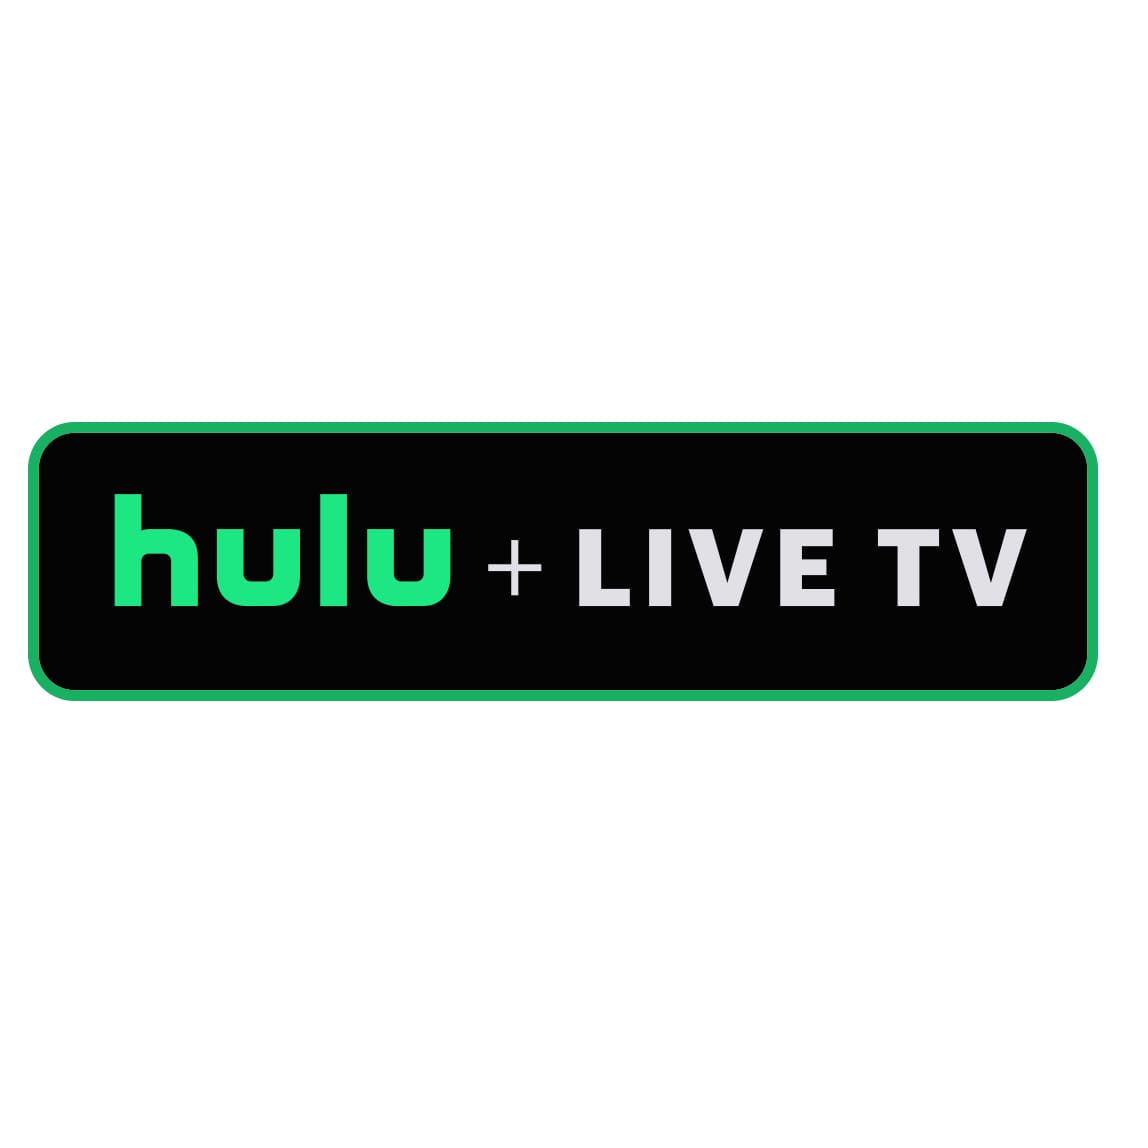 Hulu + Live TV Subscripton